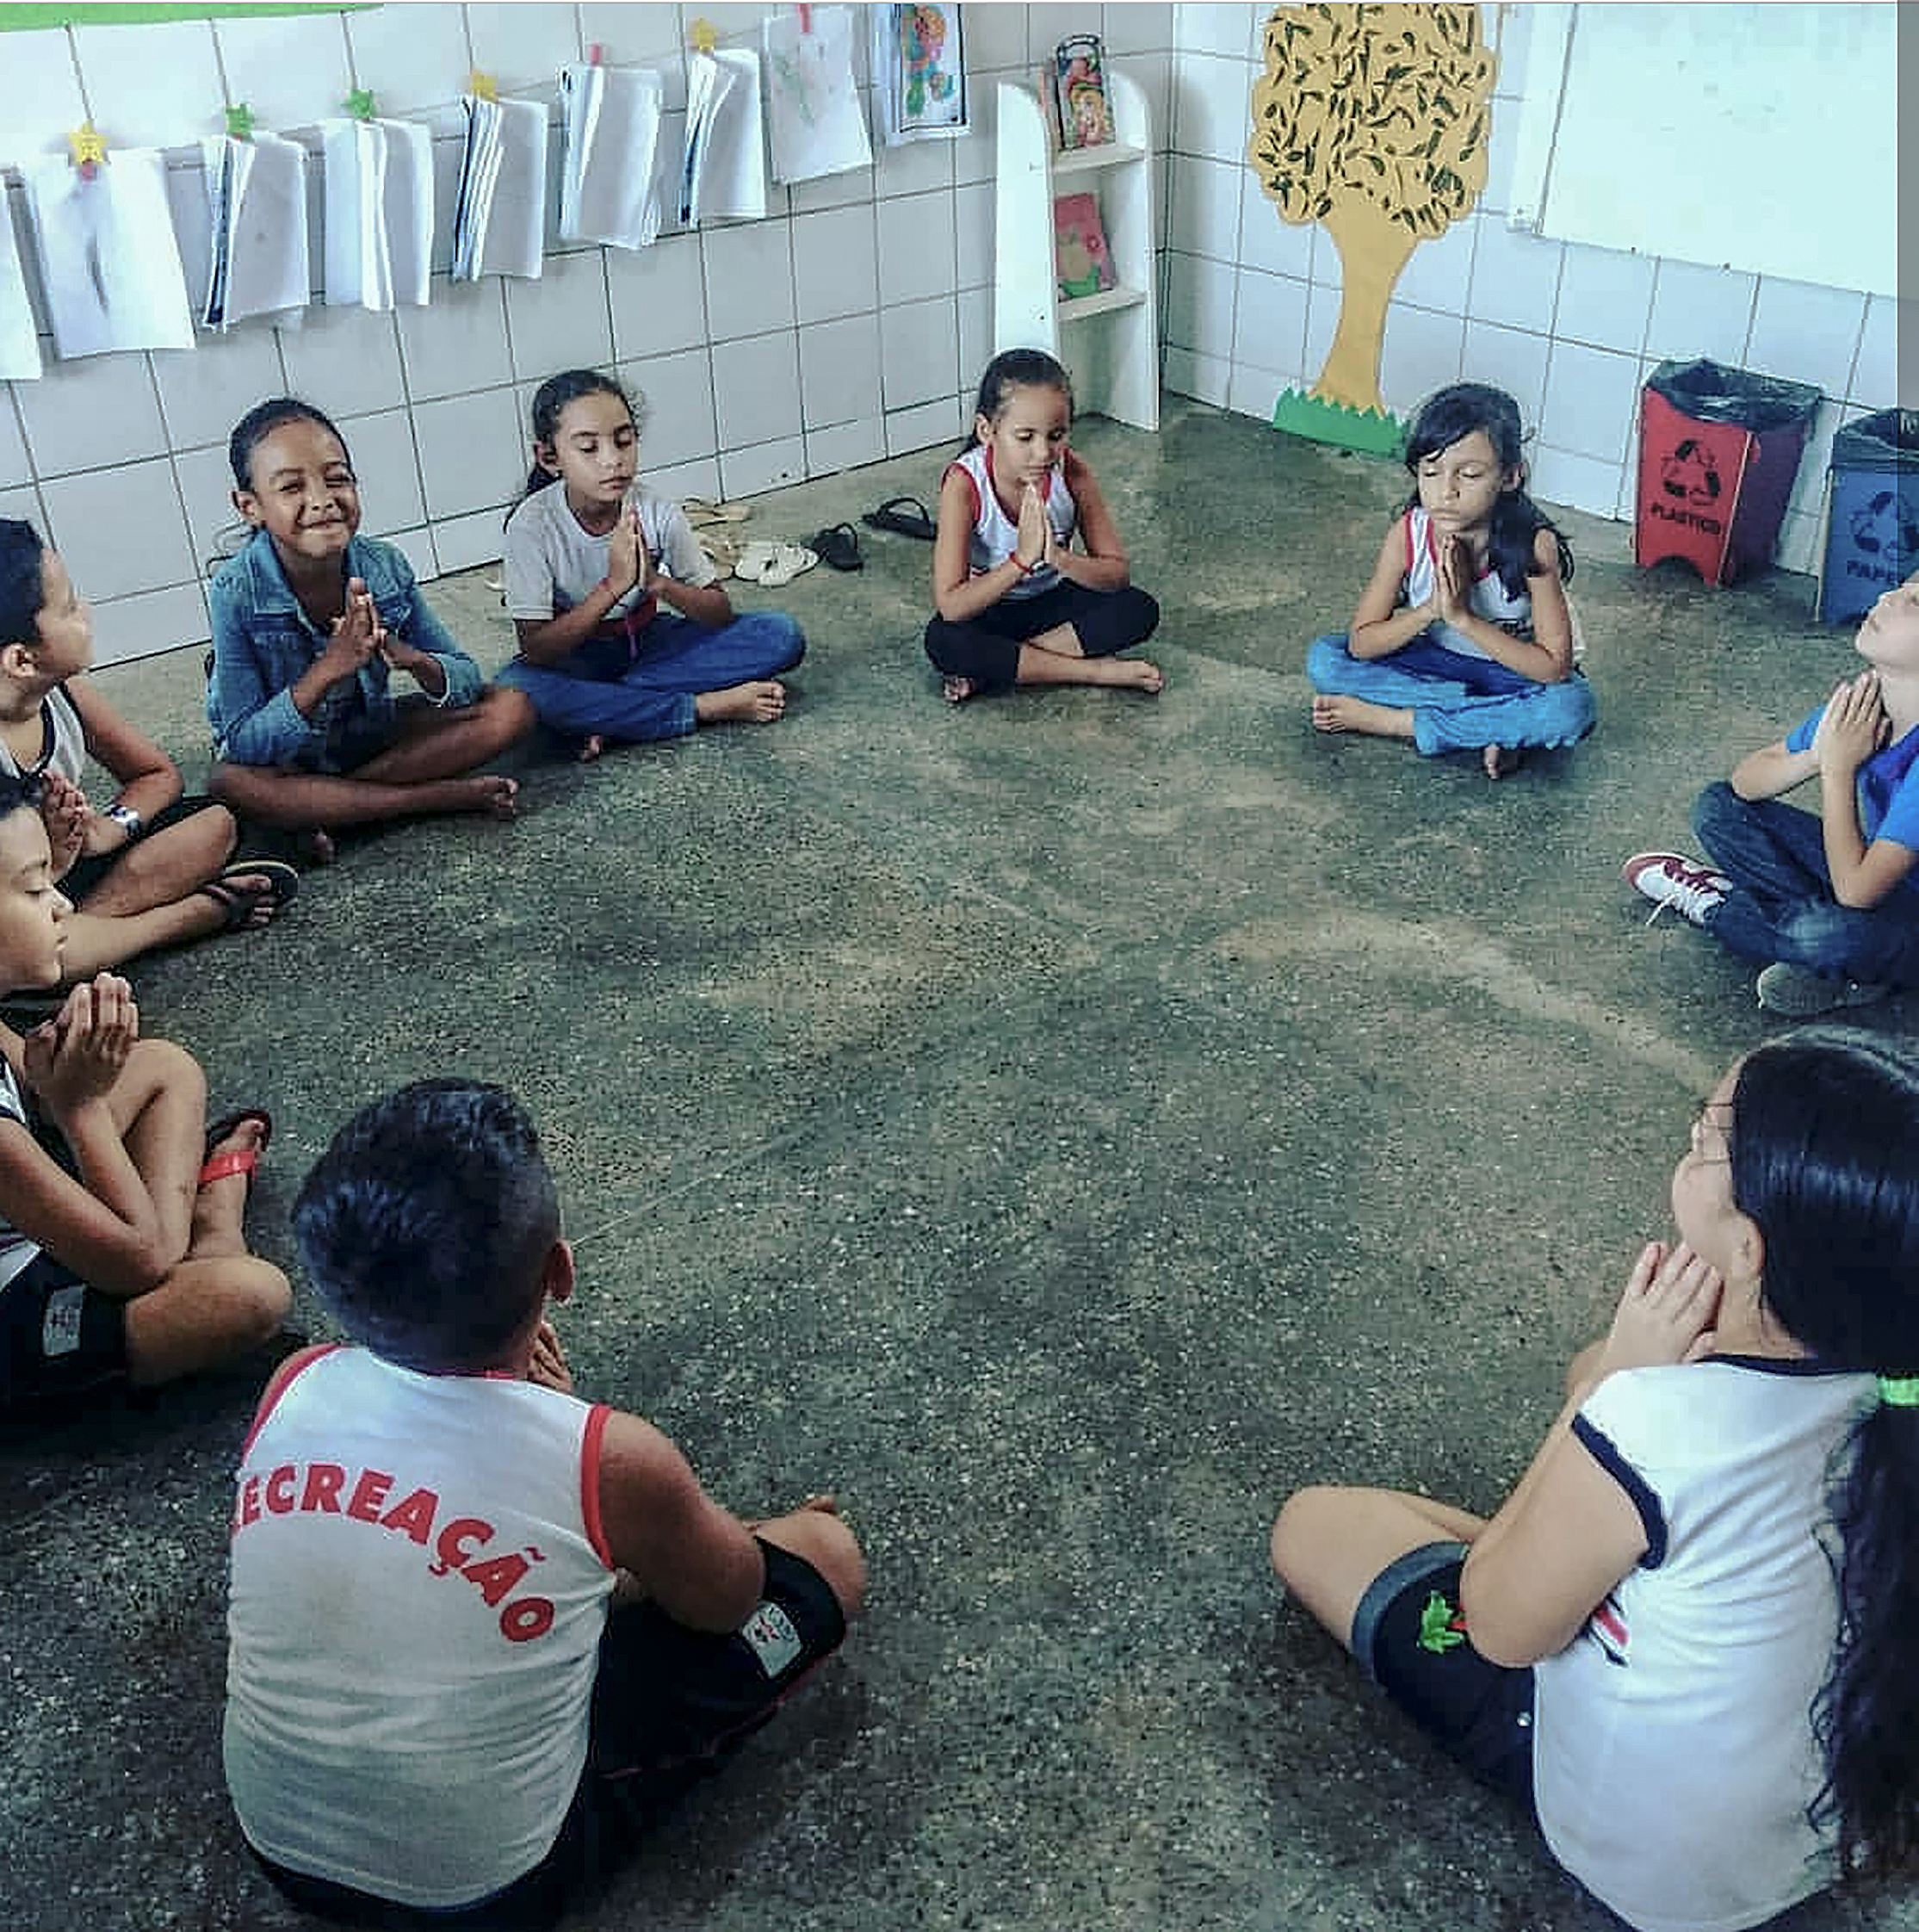 Crianças participando do projeto "Valores Humanos na Educação Infantil", do Instituto Myra Eliane. A técnica de meditação é aplicada antes da aula, com o intuito de aflorar a concentração e a criatividade dos pequenos. (Foto: Reprodução)